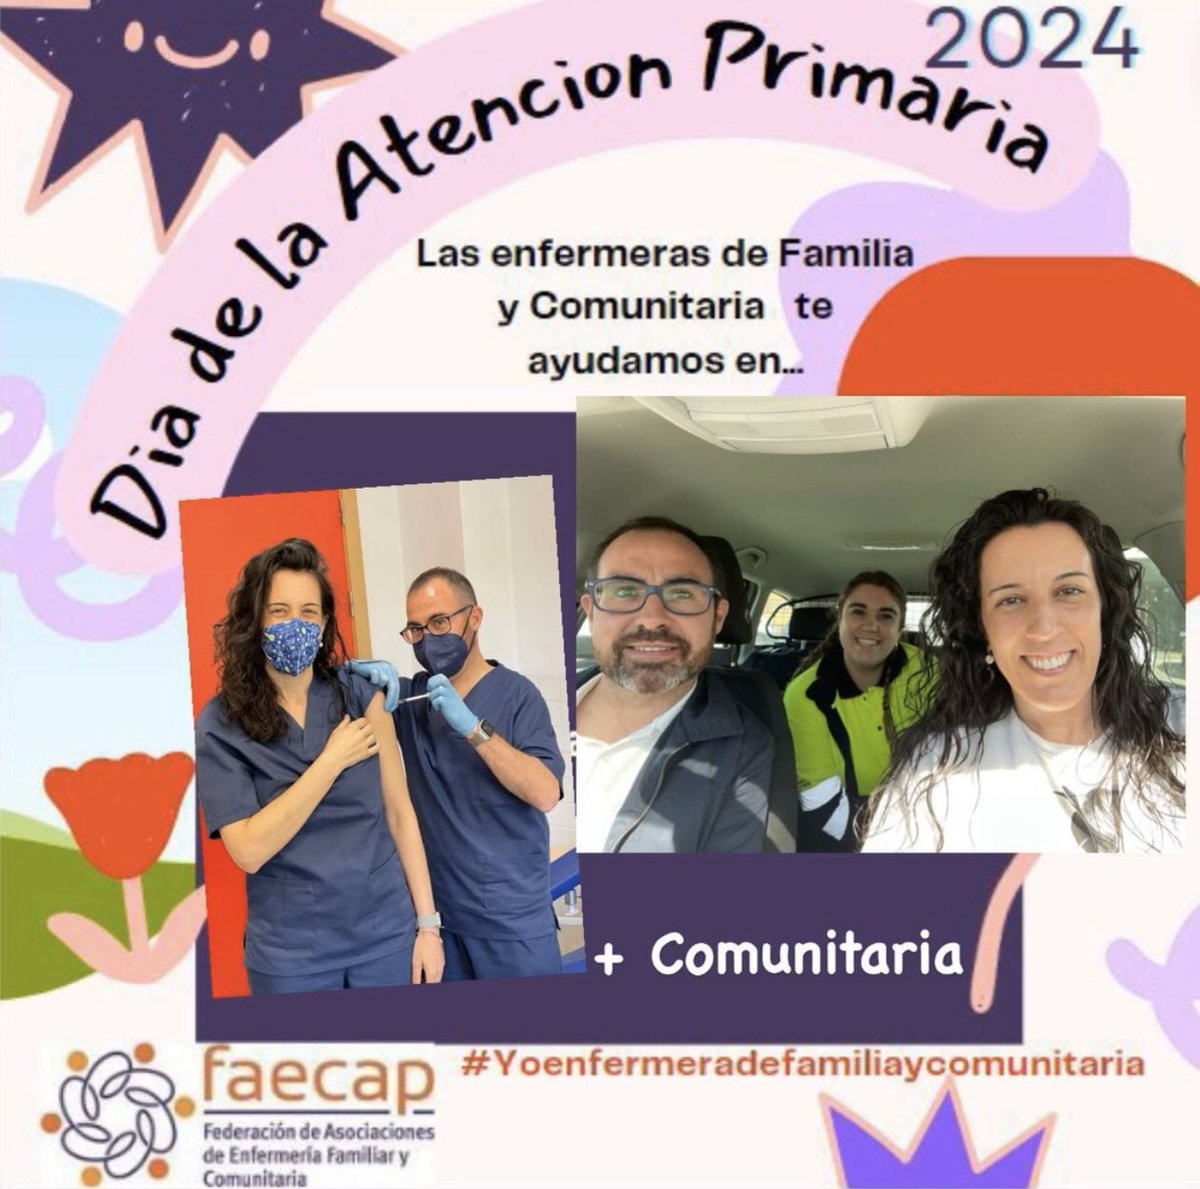 #DiadeAtencionPrimaria #yoenfermeradefamiliaycomunitaria 
#enfermeras #EFyC @faecap @raqueljulian1 @Beatriz_Gmez_